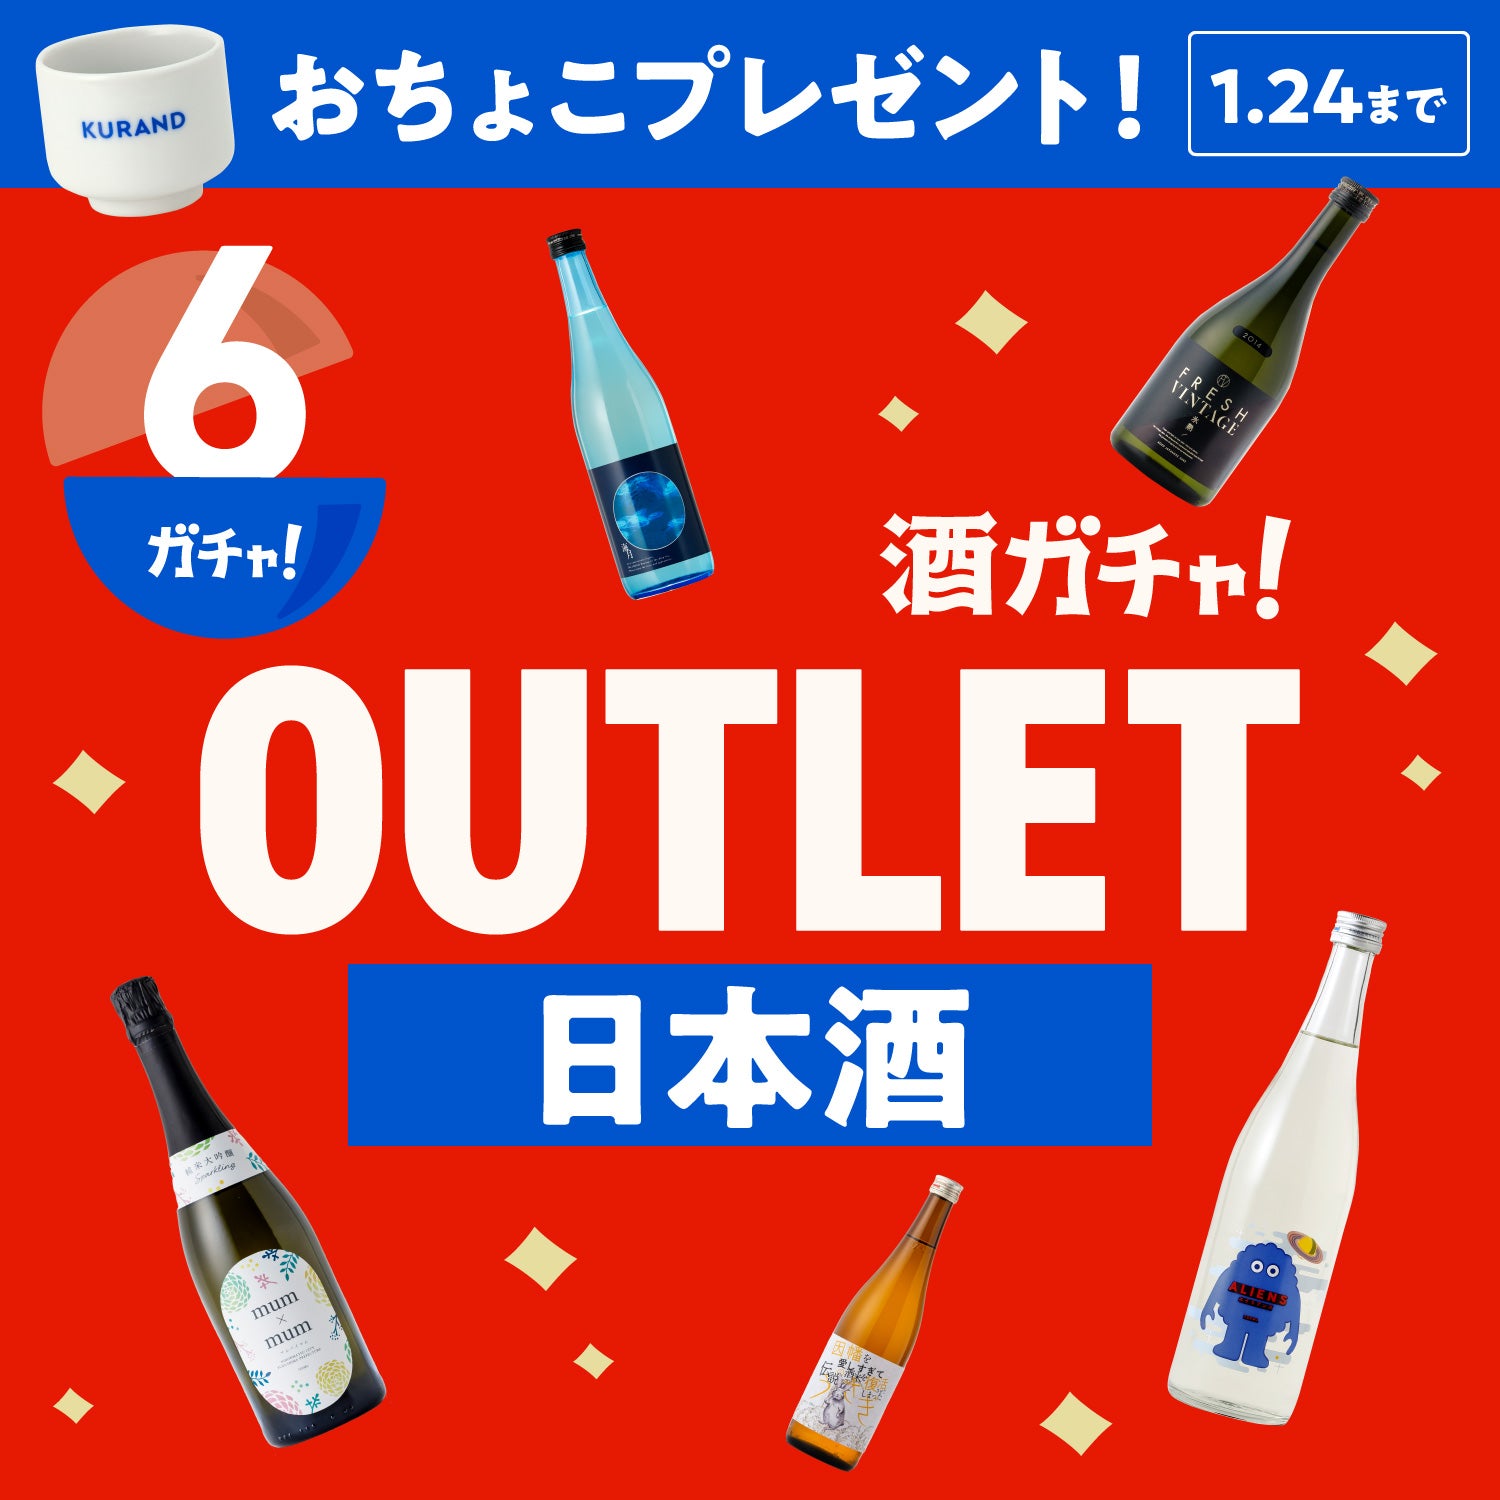 【6本】酒ガチャアウトレット -日本酒-【1月24日まで】